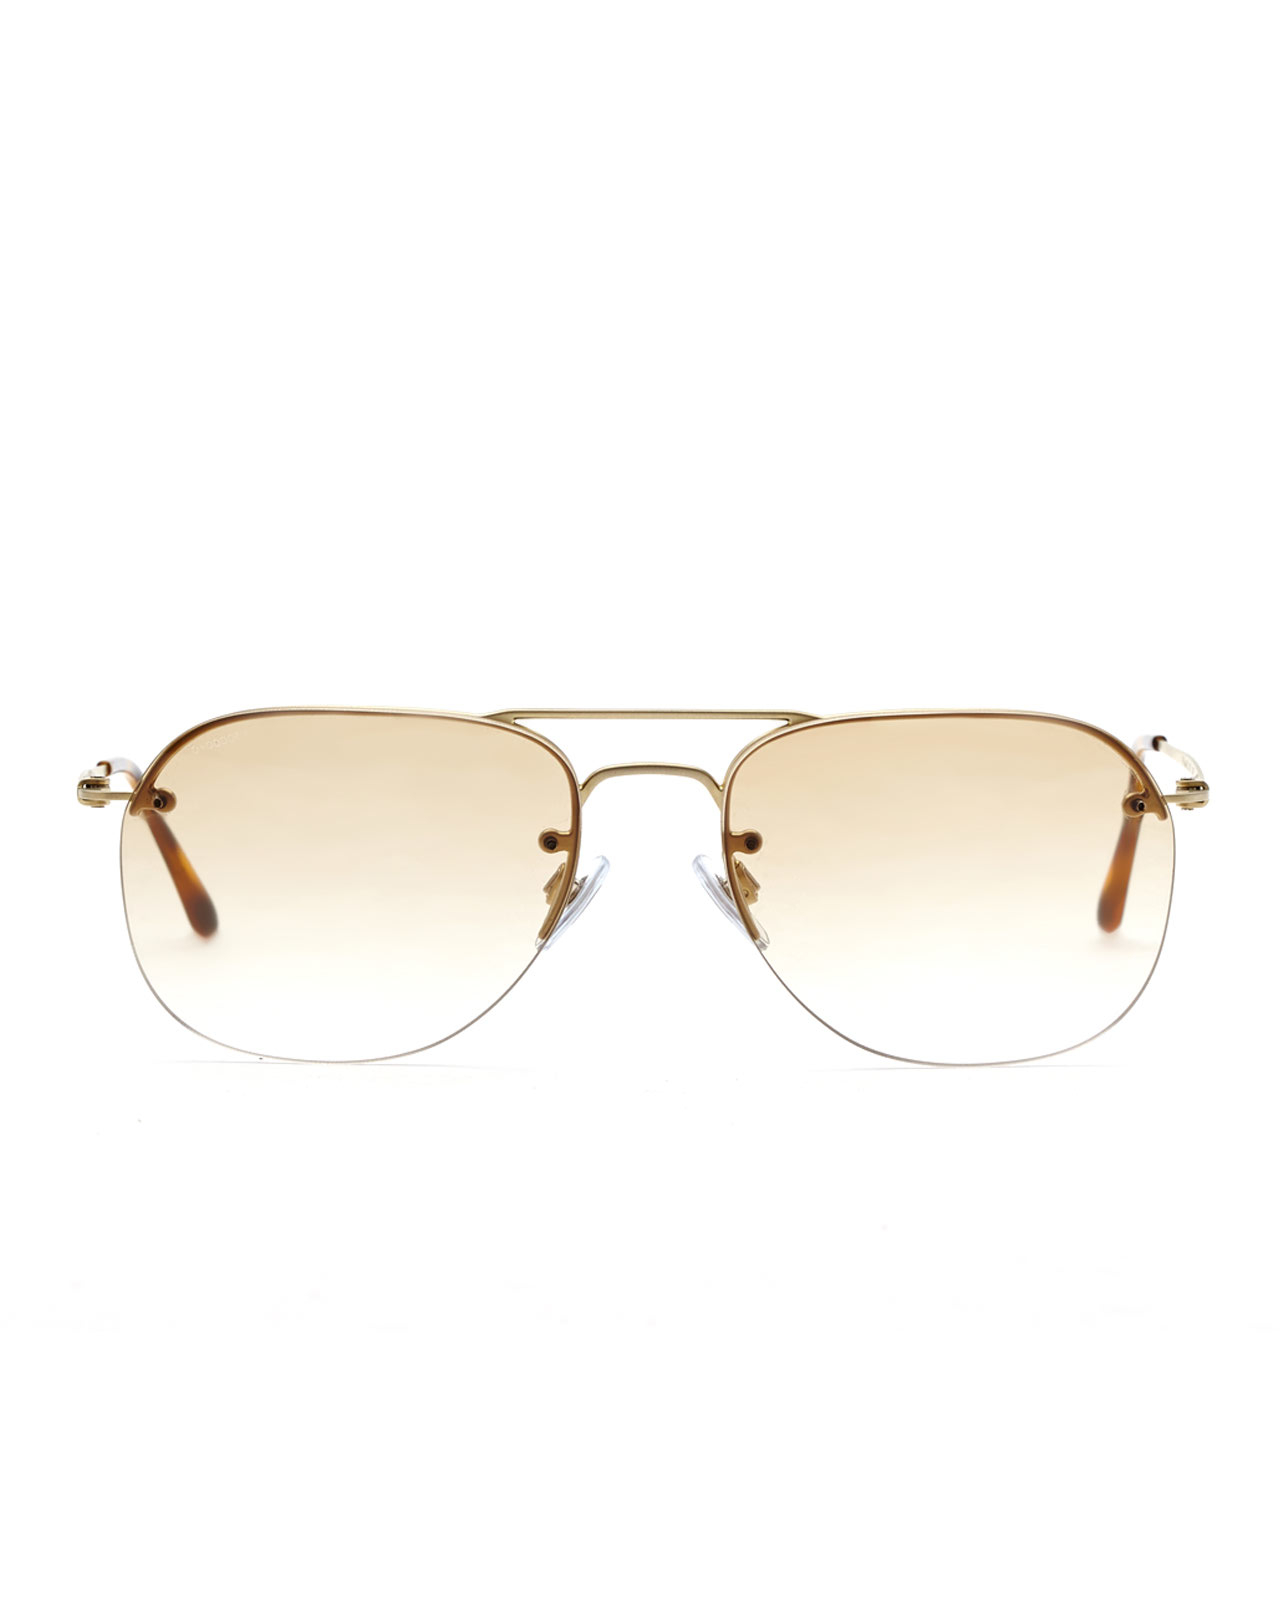 Lyst - Giorgio Armani Ar6004 Gold-Tone Rimless Aviator Sunglasses in ...